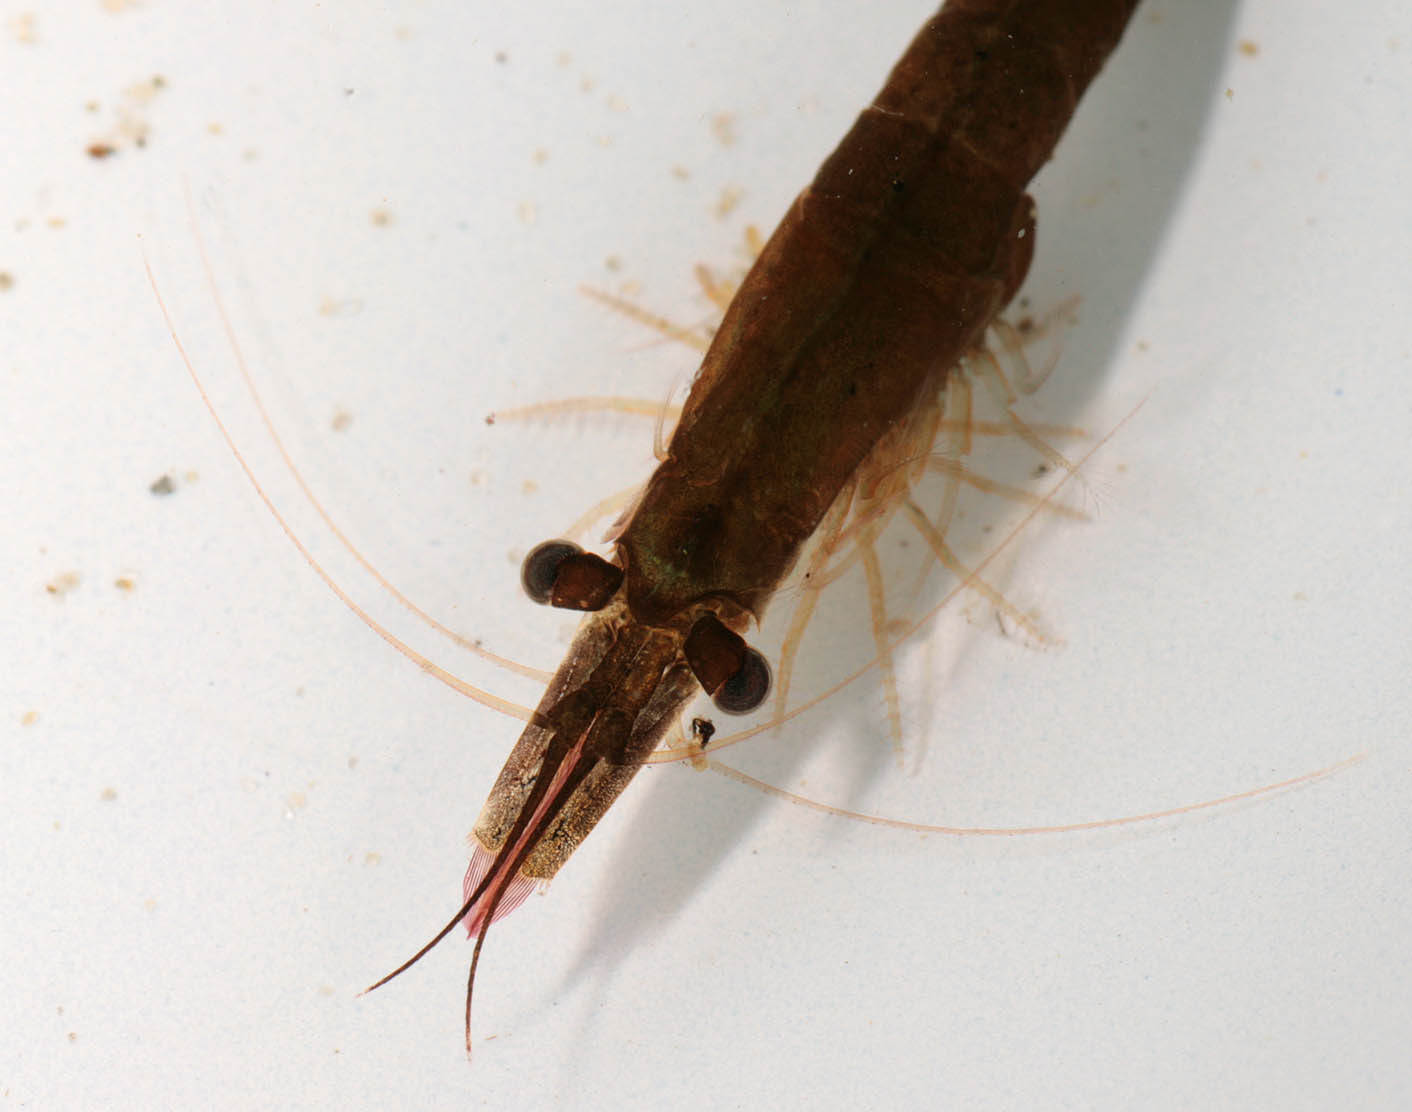 Image of Chameleon shrimp